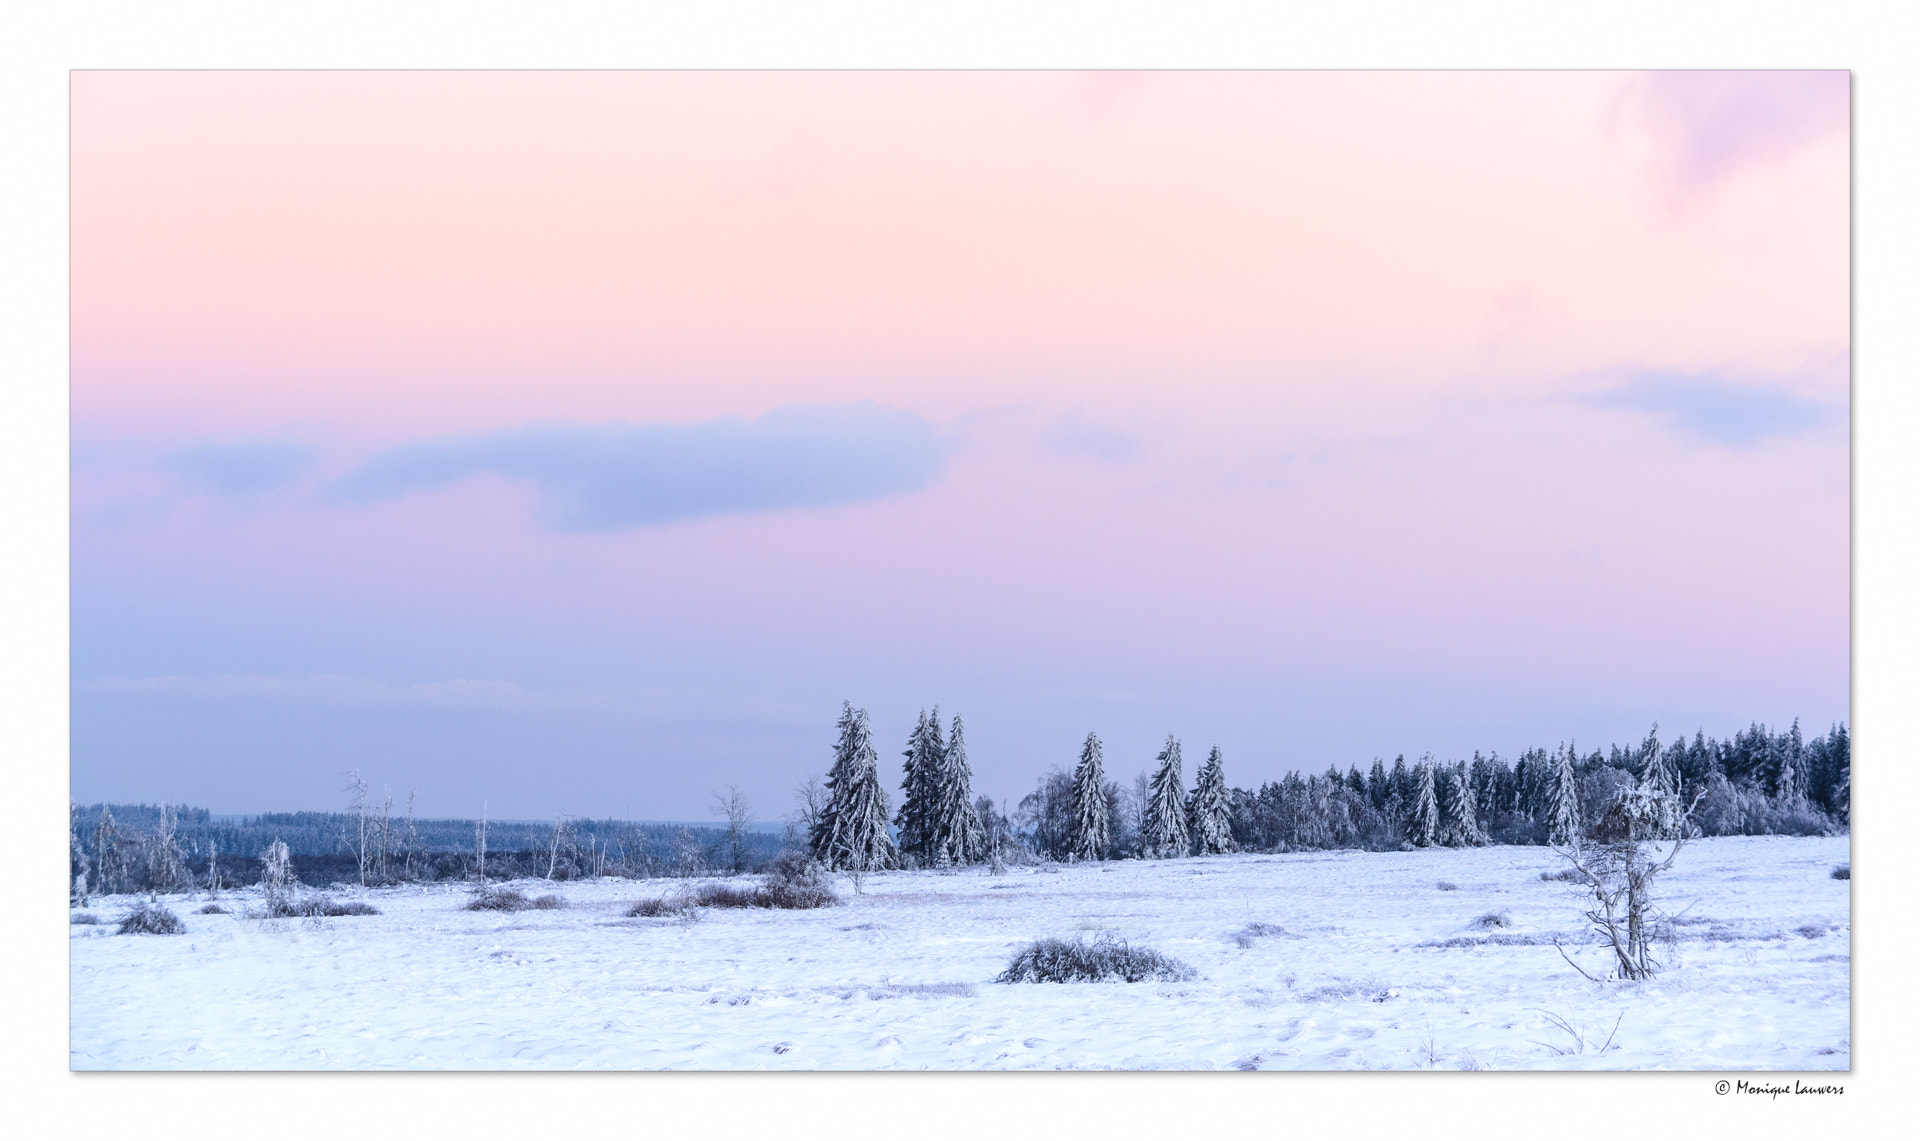 Nikon D600 + Nikon AF-S Nikkor 80-400mm F4.5-5.6G ED VR sample photo. Sunset in a beautiful winter landscape photography